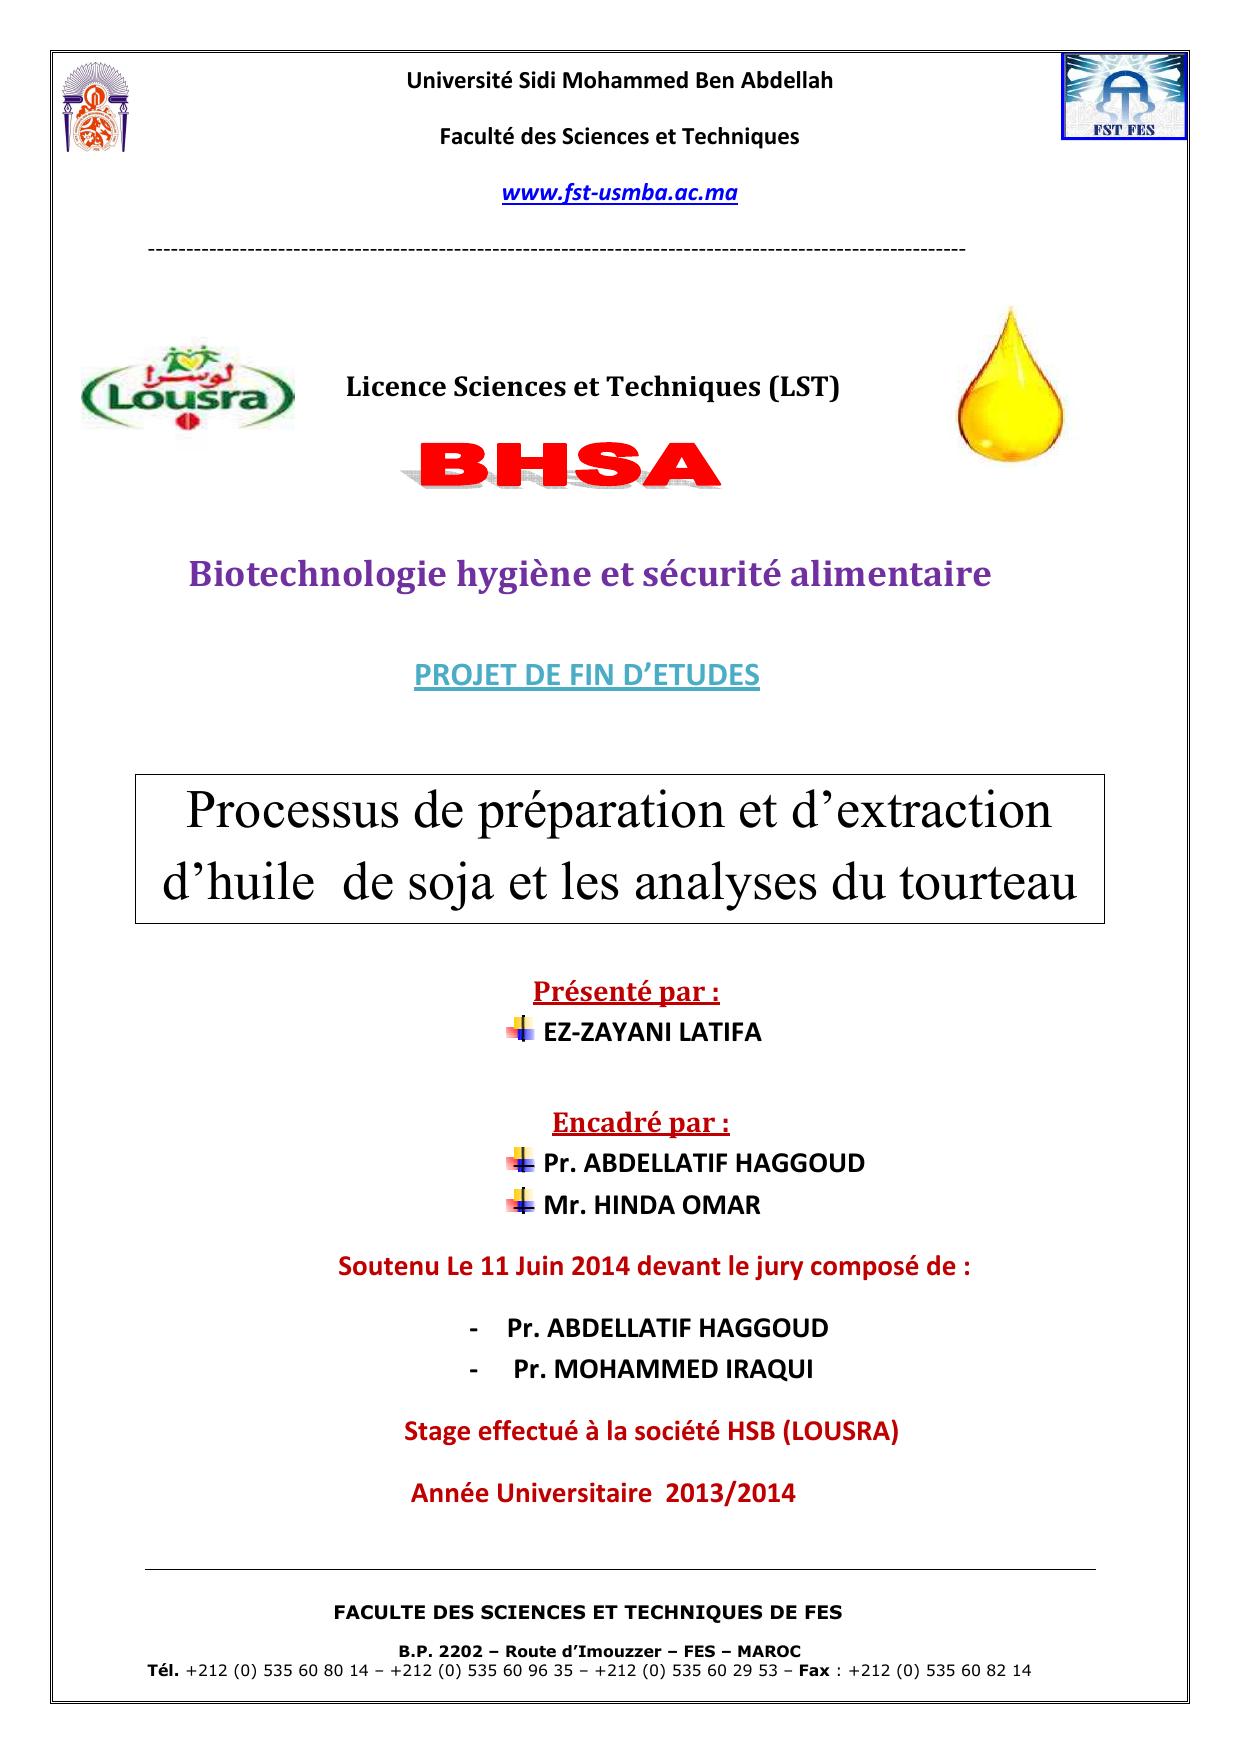 Processus de préparation et d’extraction d’huile de soja et les analyses du tourteau